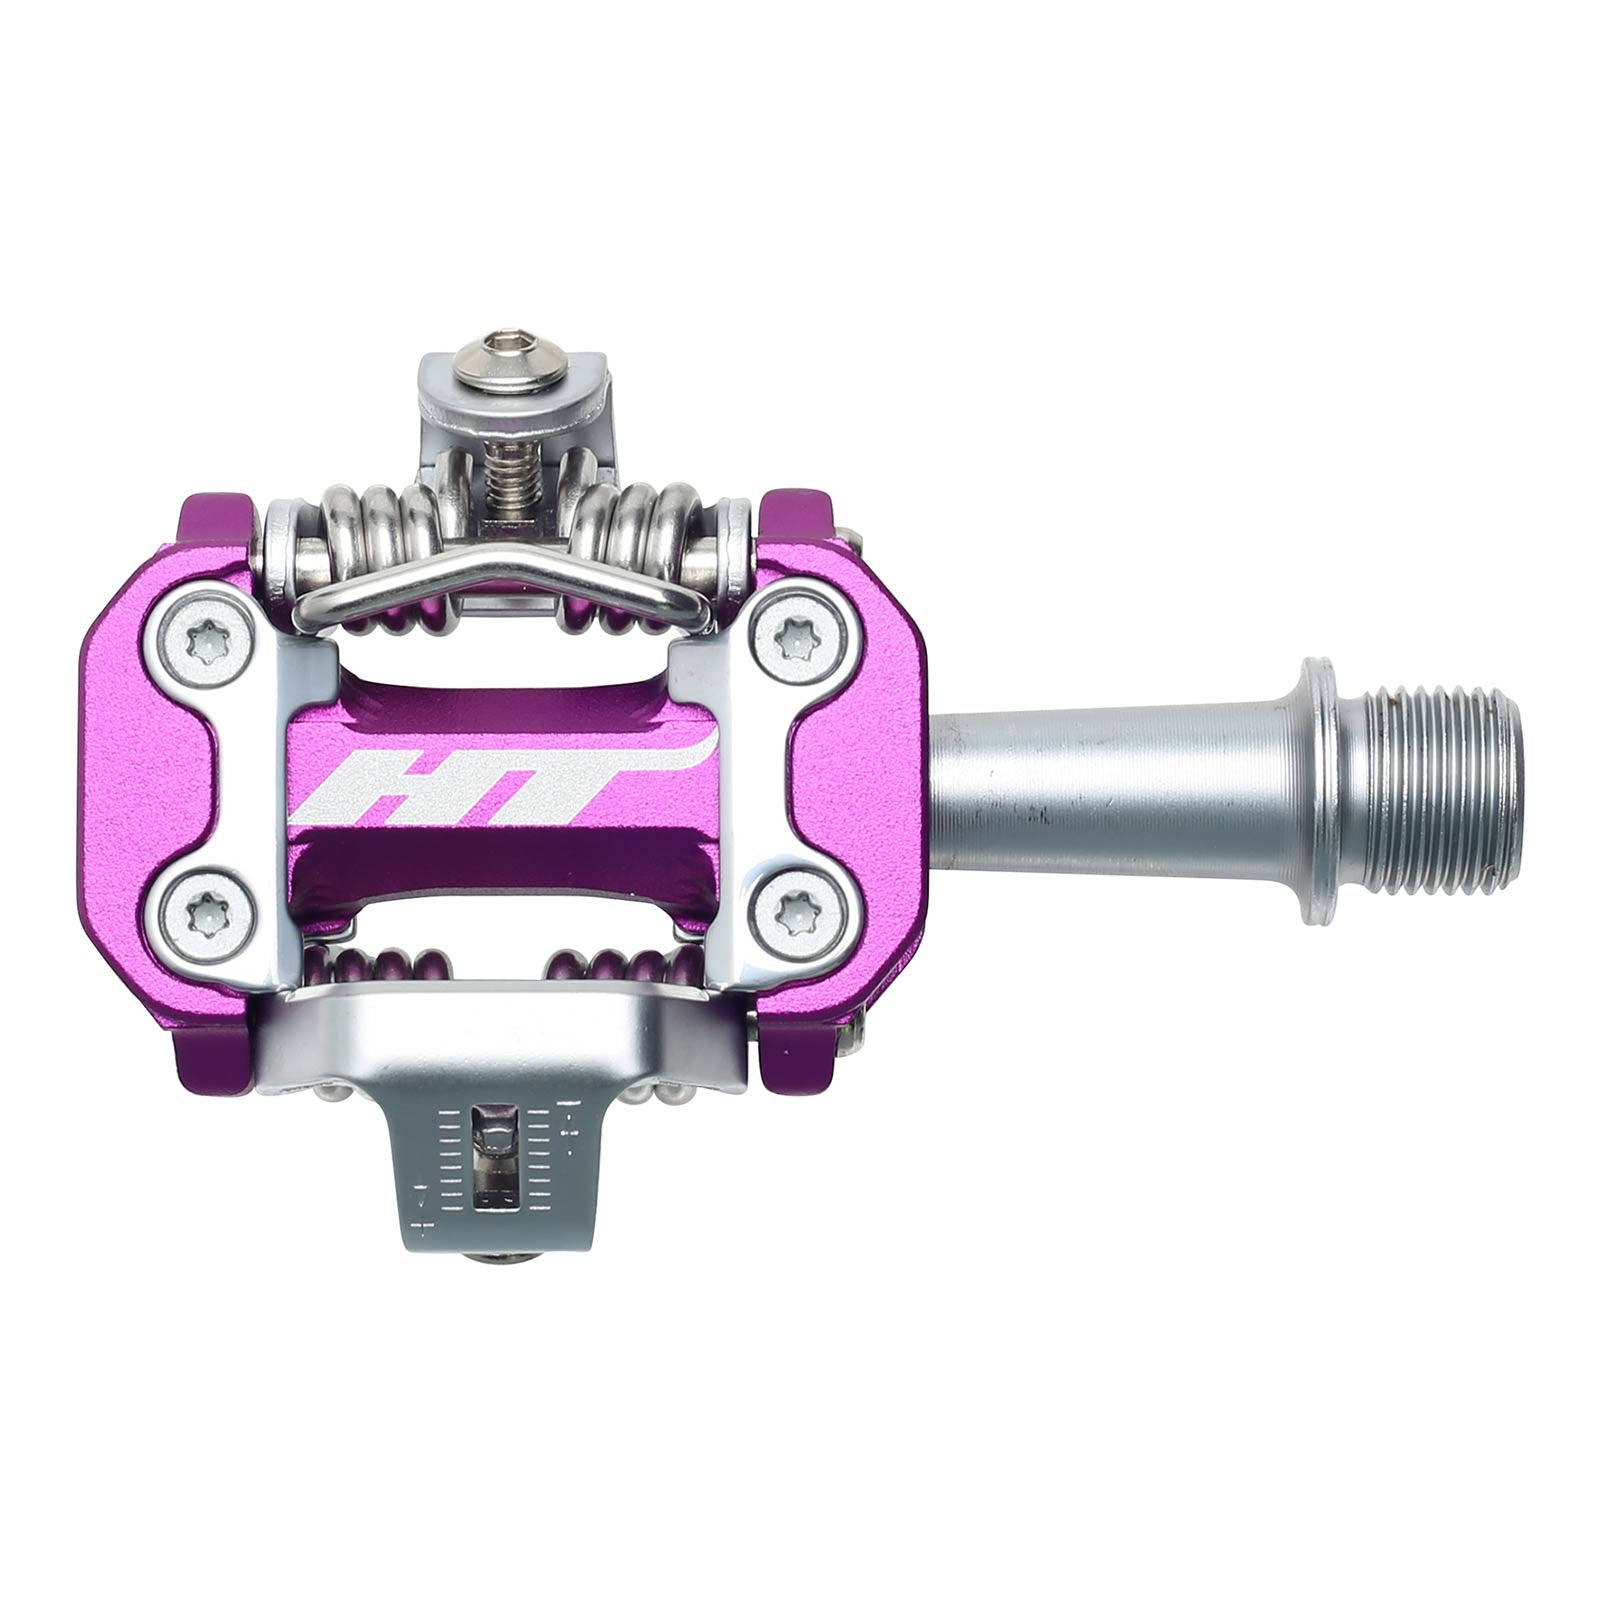 Ht M2 Pedals Alloy / CNC CRMO - Purple